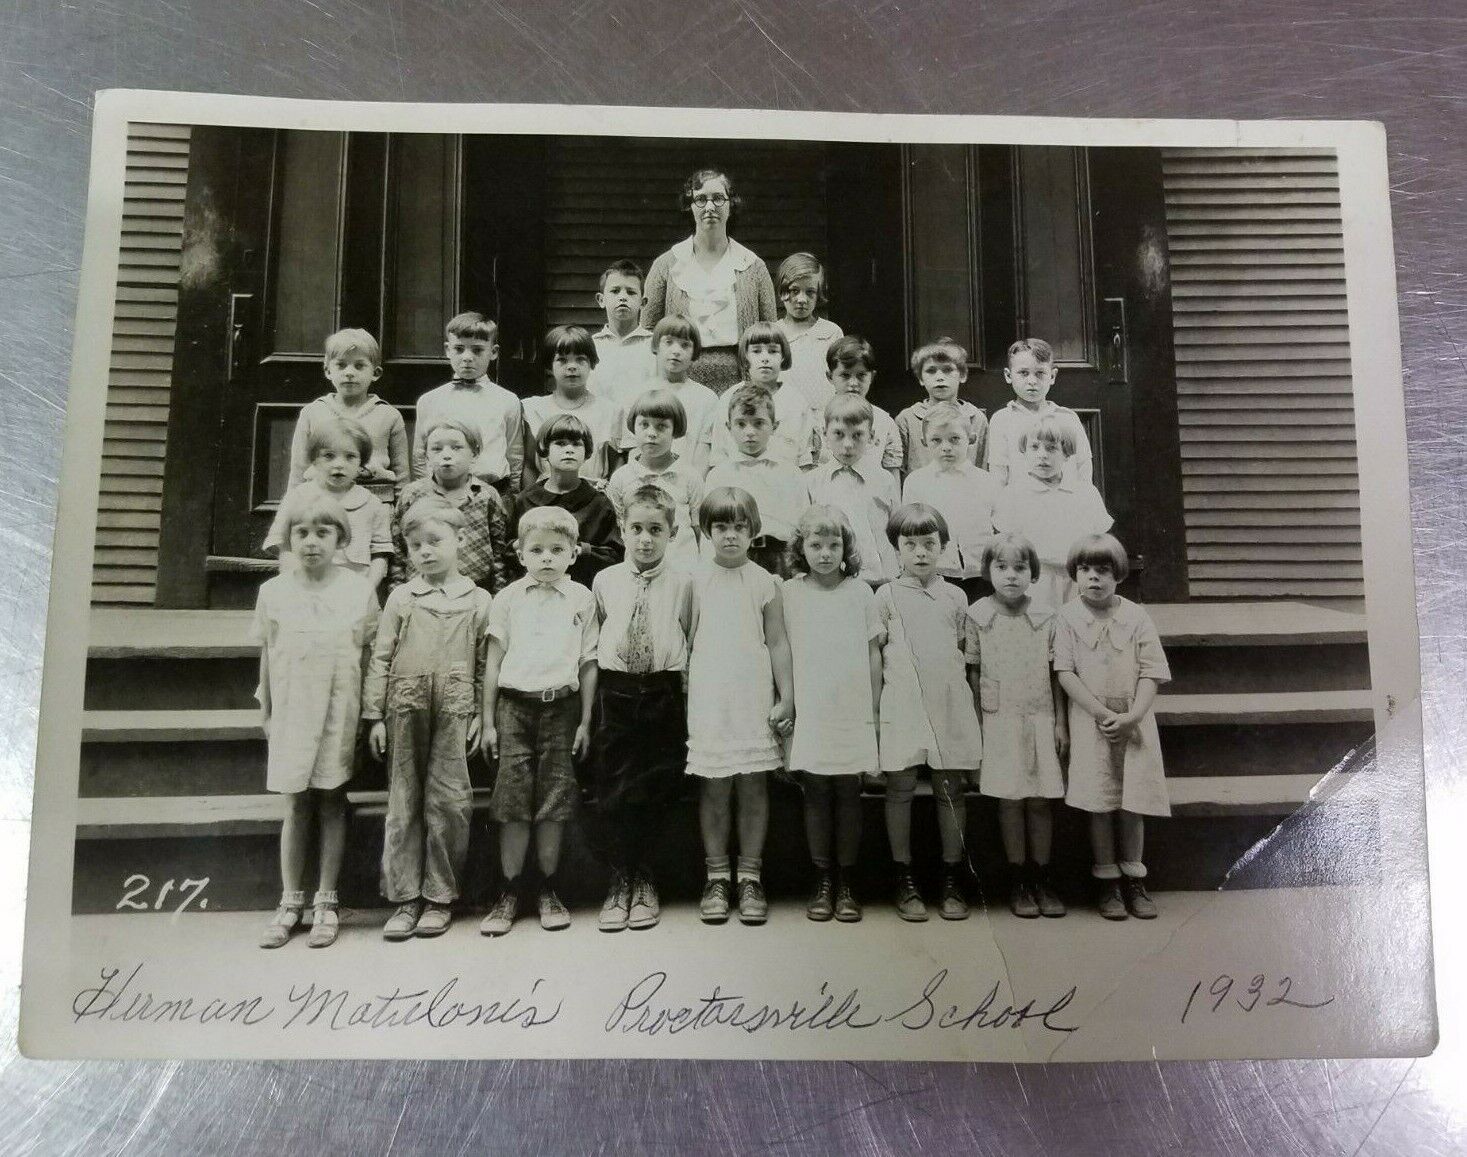 Antique 1932 Proctorsville Village School Class Photo, Cavendish Vermont 5x7 B&W